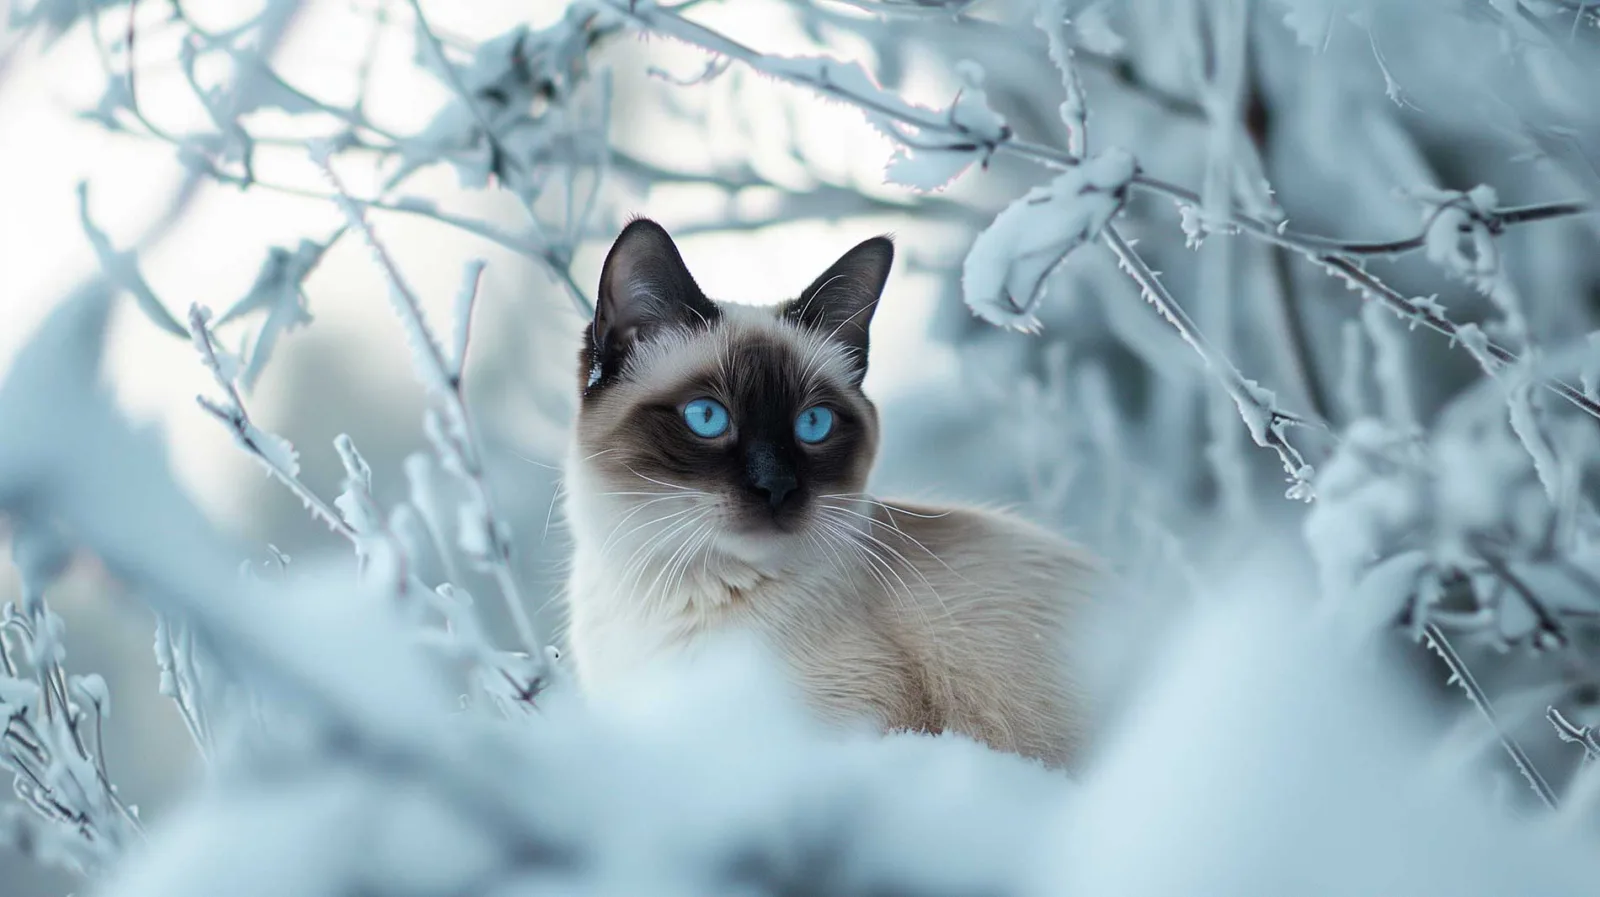 Eine Siamkatze mit auffallend blauen Augen und cremefarbenem Fell mit dunklen Gesichtszügen und Ohren sitzt inmitten einer verschneiten Winterlandschaft. Der Blick der Katze ist konzentriert und wachsam. Der Hintergrund besteht aus schneebedeckten Ästen und eisigen Zweigen, die die kalte, ruhige Atmosphäre des Bildes noch verstärken.